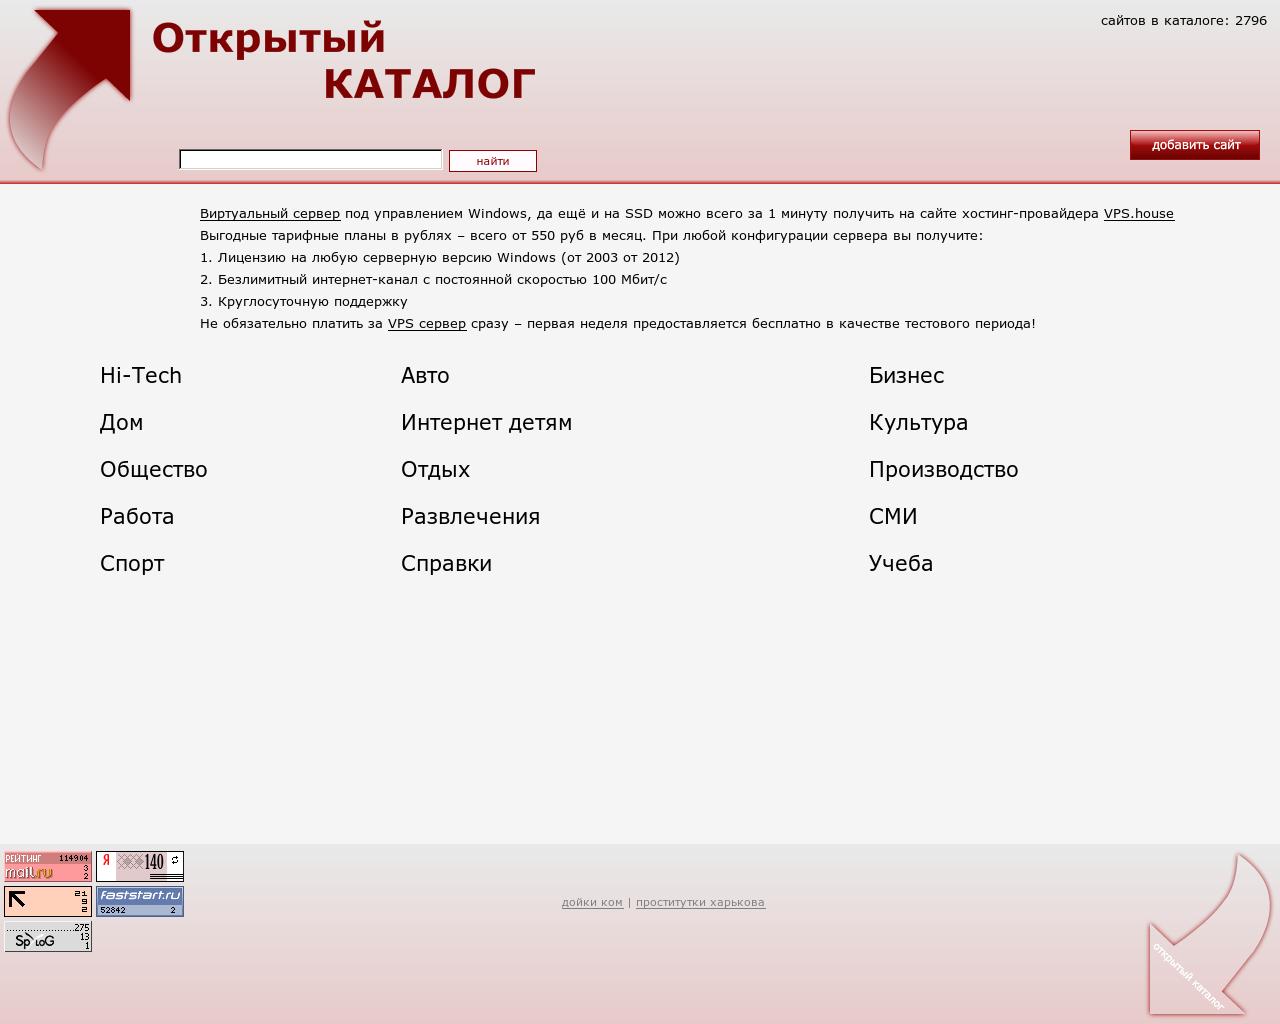 Изображение сайта opencatalog.ru в разрешении 1280x1024